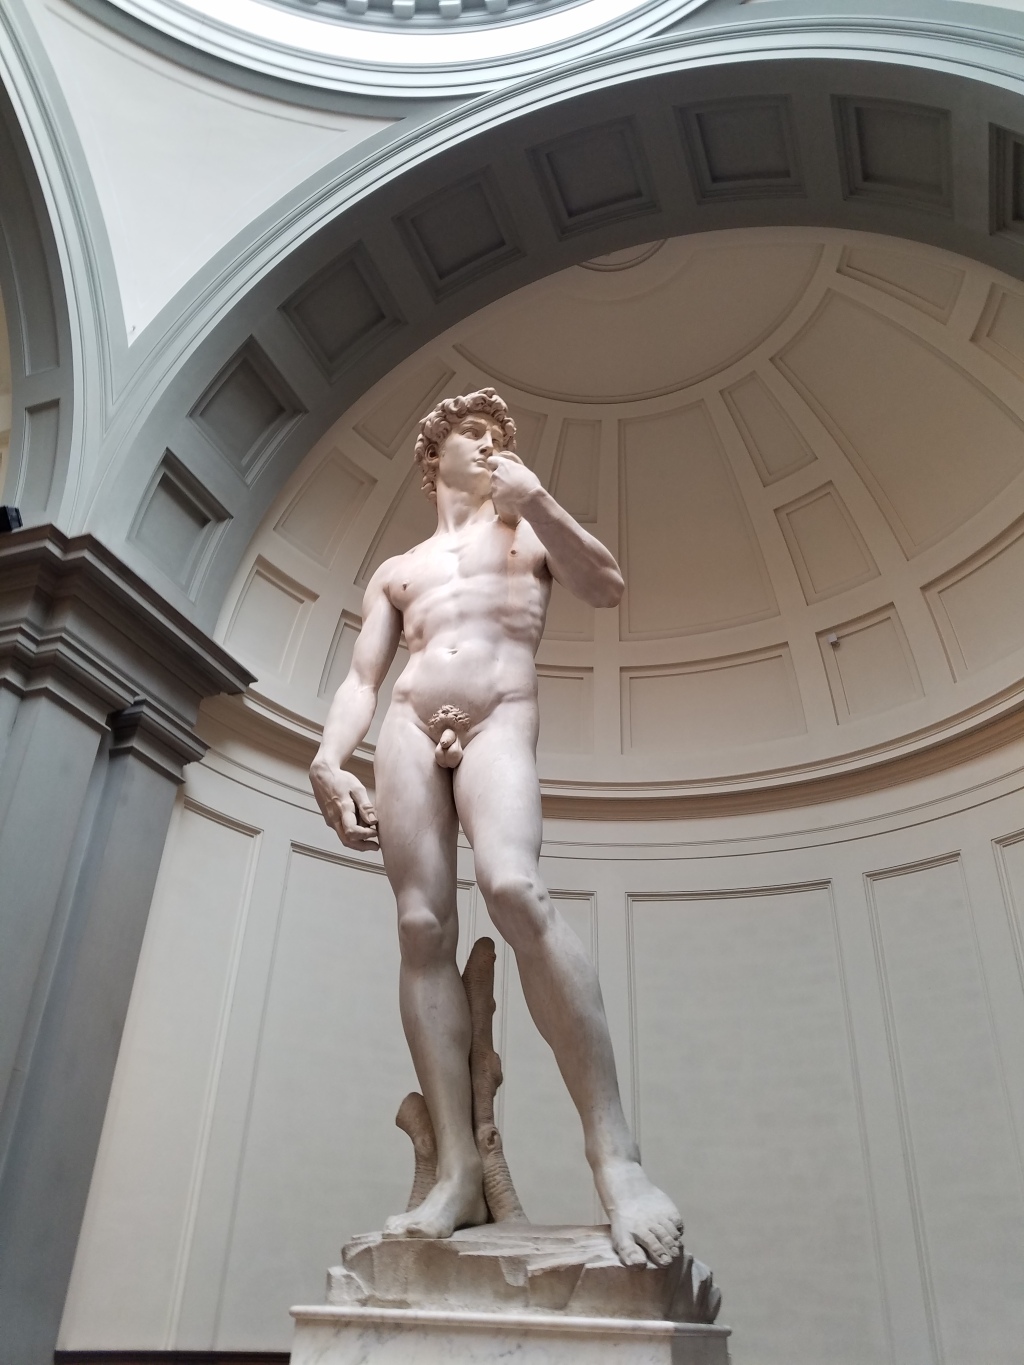 Michelangelo’s David